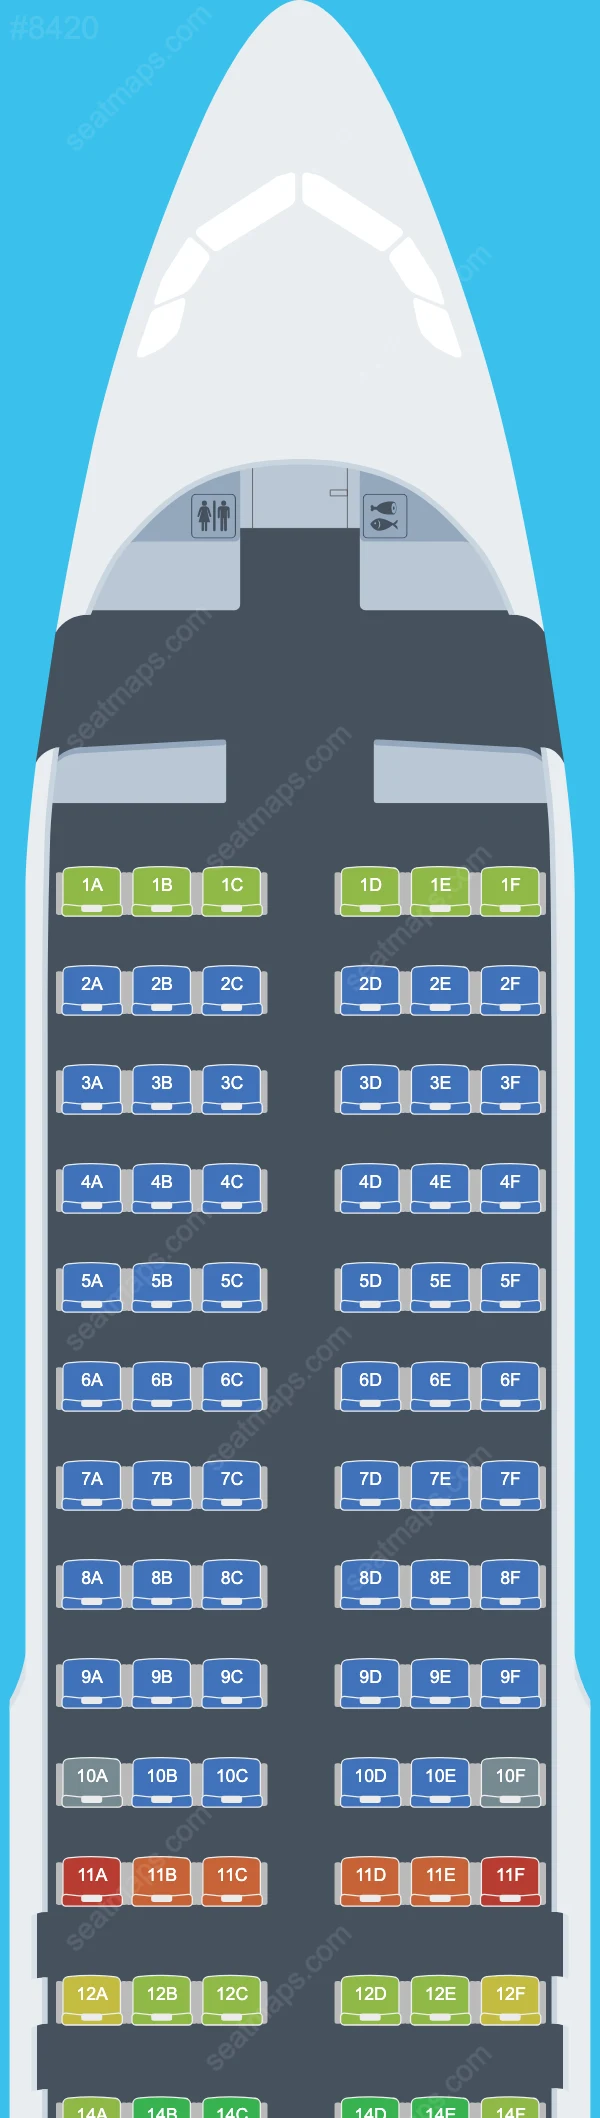 Air Busan Airbus A320 Seat Maps A320-200 V.1